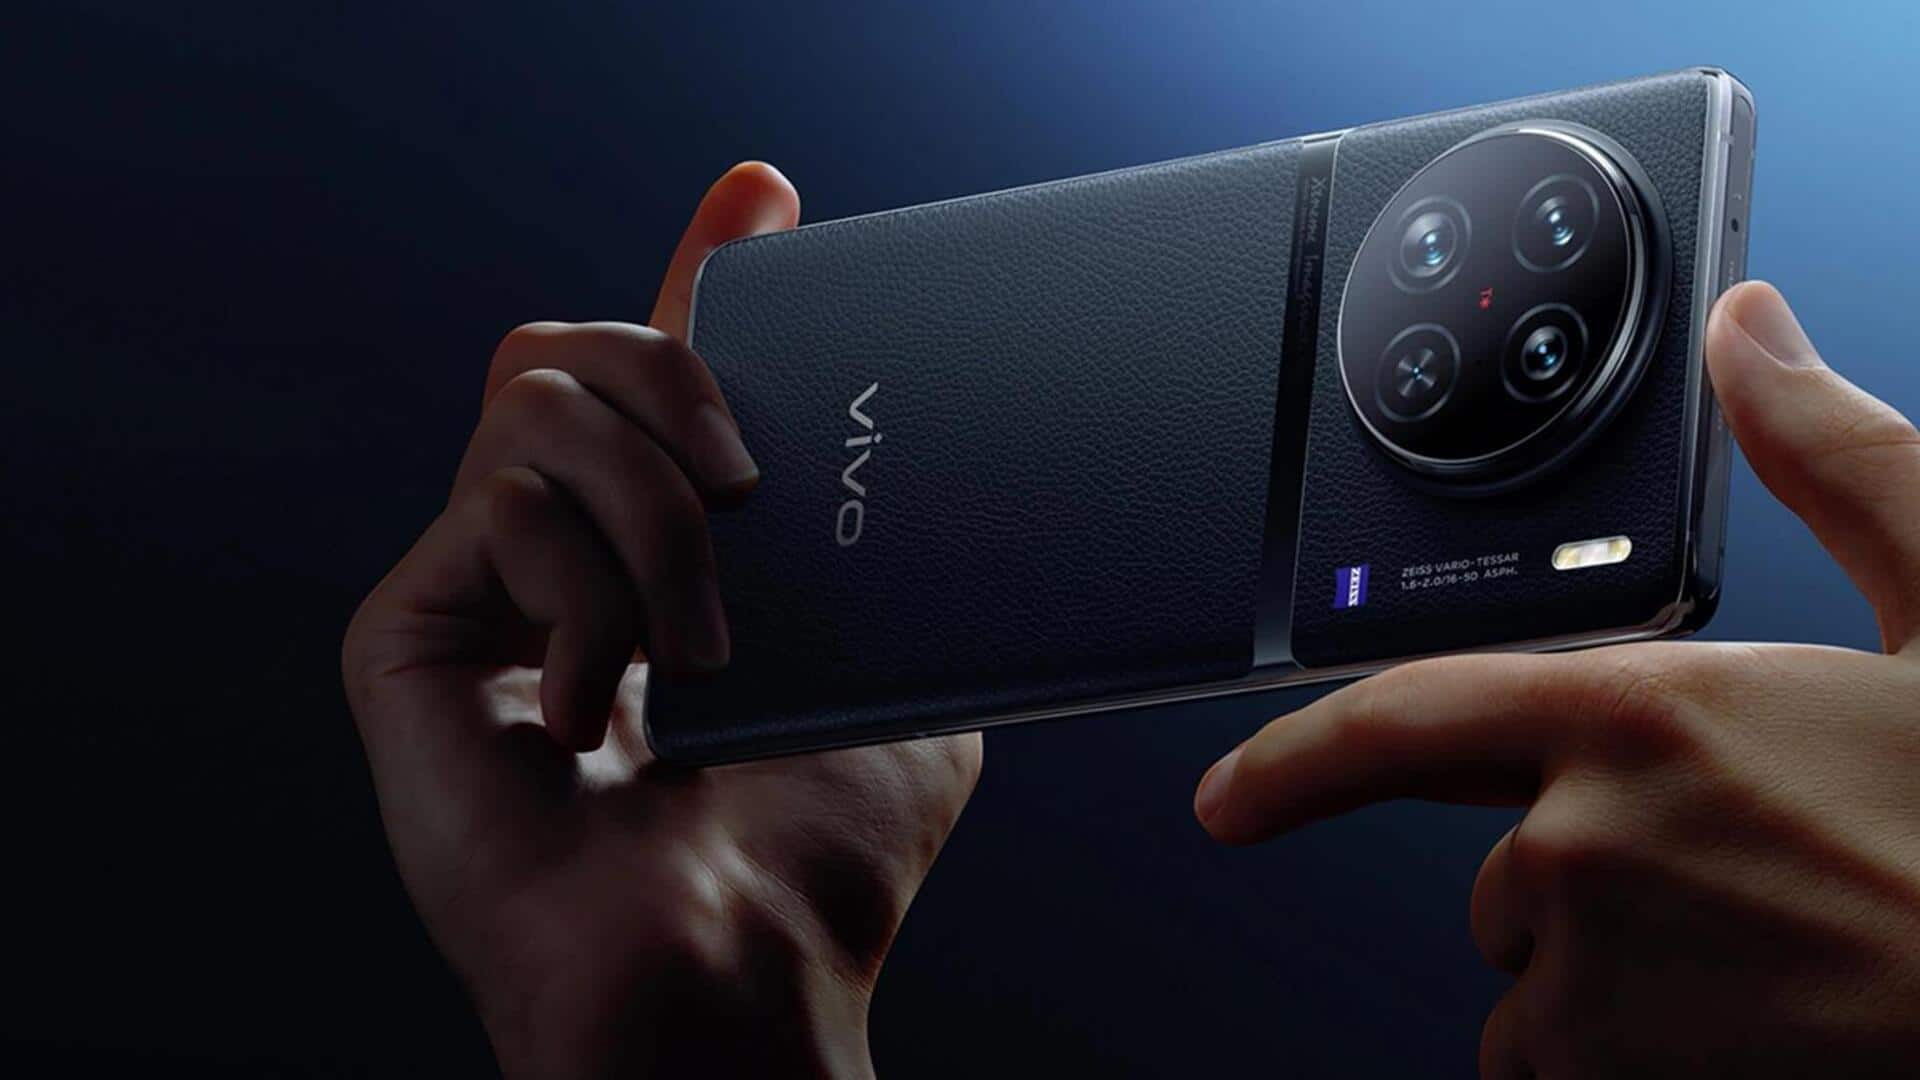 वीवो X90 प्रो की कीमत 10,000 रुपये हुई कम, फोन में है 32MP का सेल्फी कैमरा